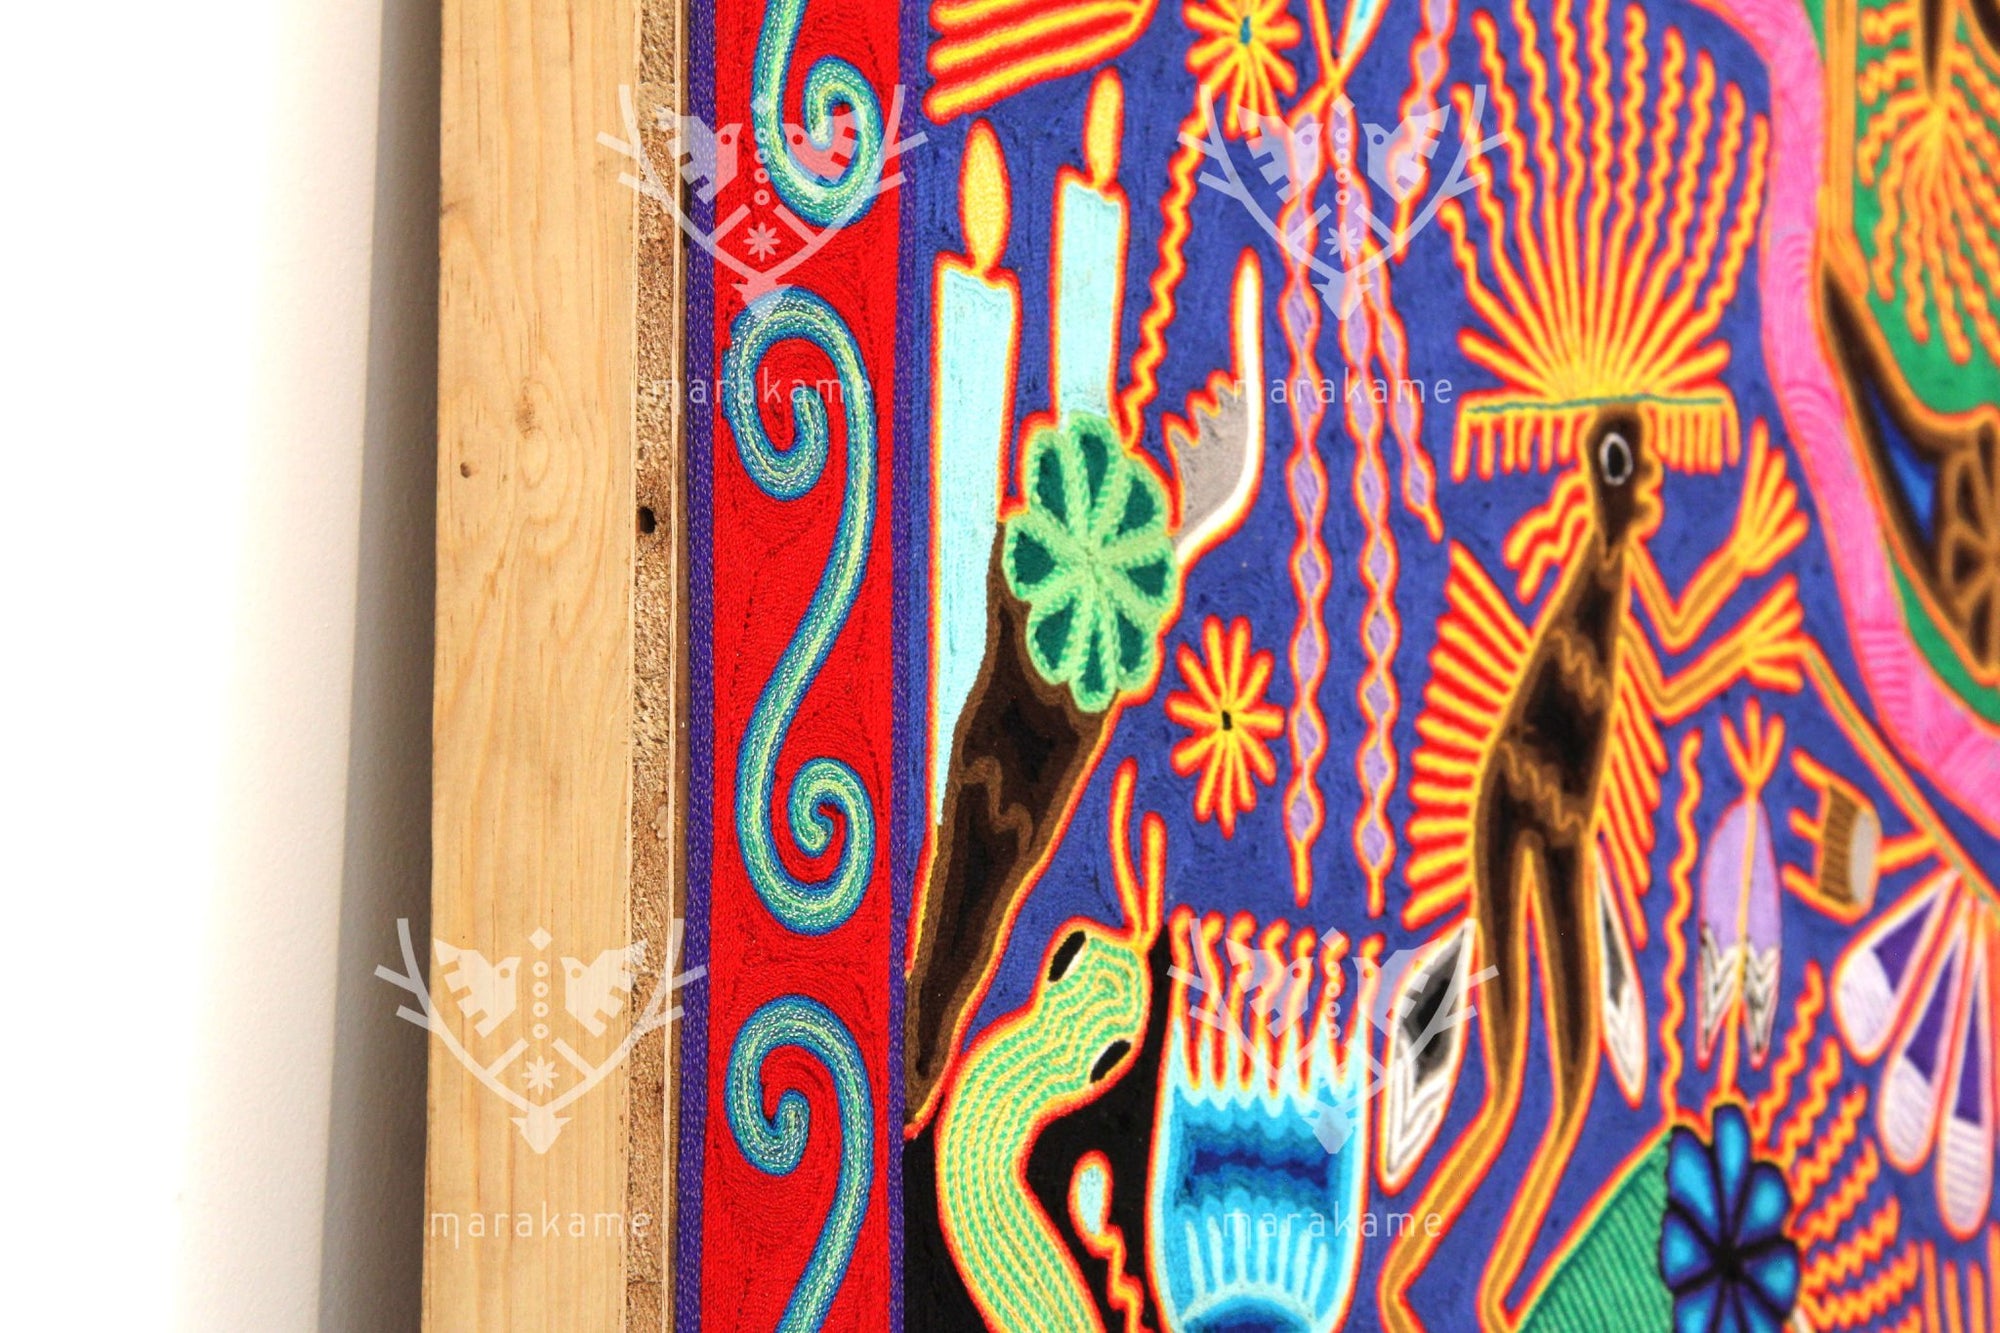 ニエリカ・デ・エスタンブル・ウイチョルの絵画 - ペヨーテの家族 - 2 x 2 m。 - ウイチョル族の芸術 - マラカメ